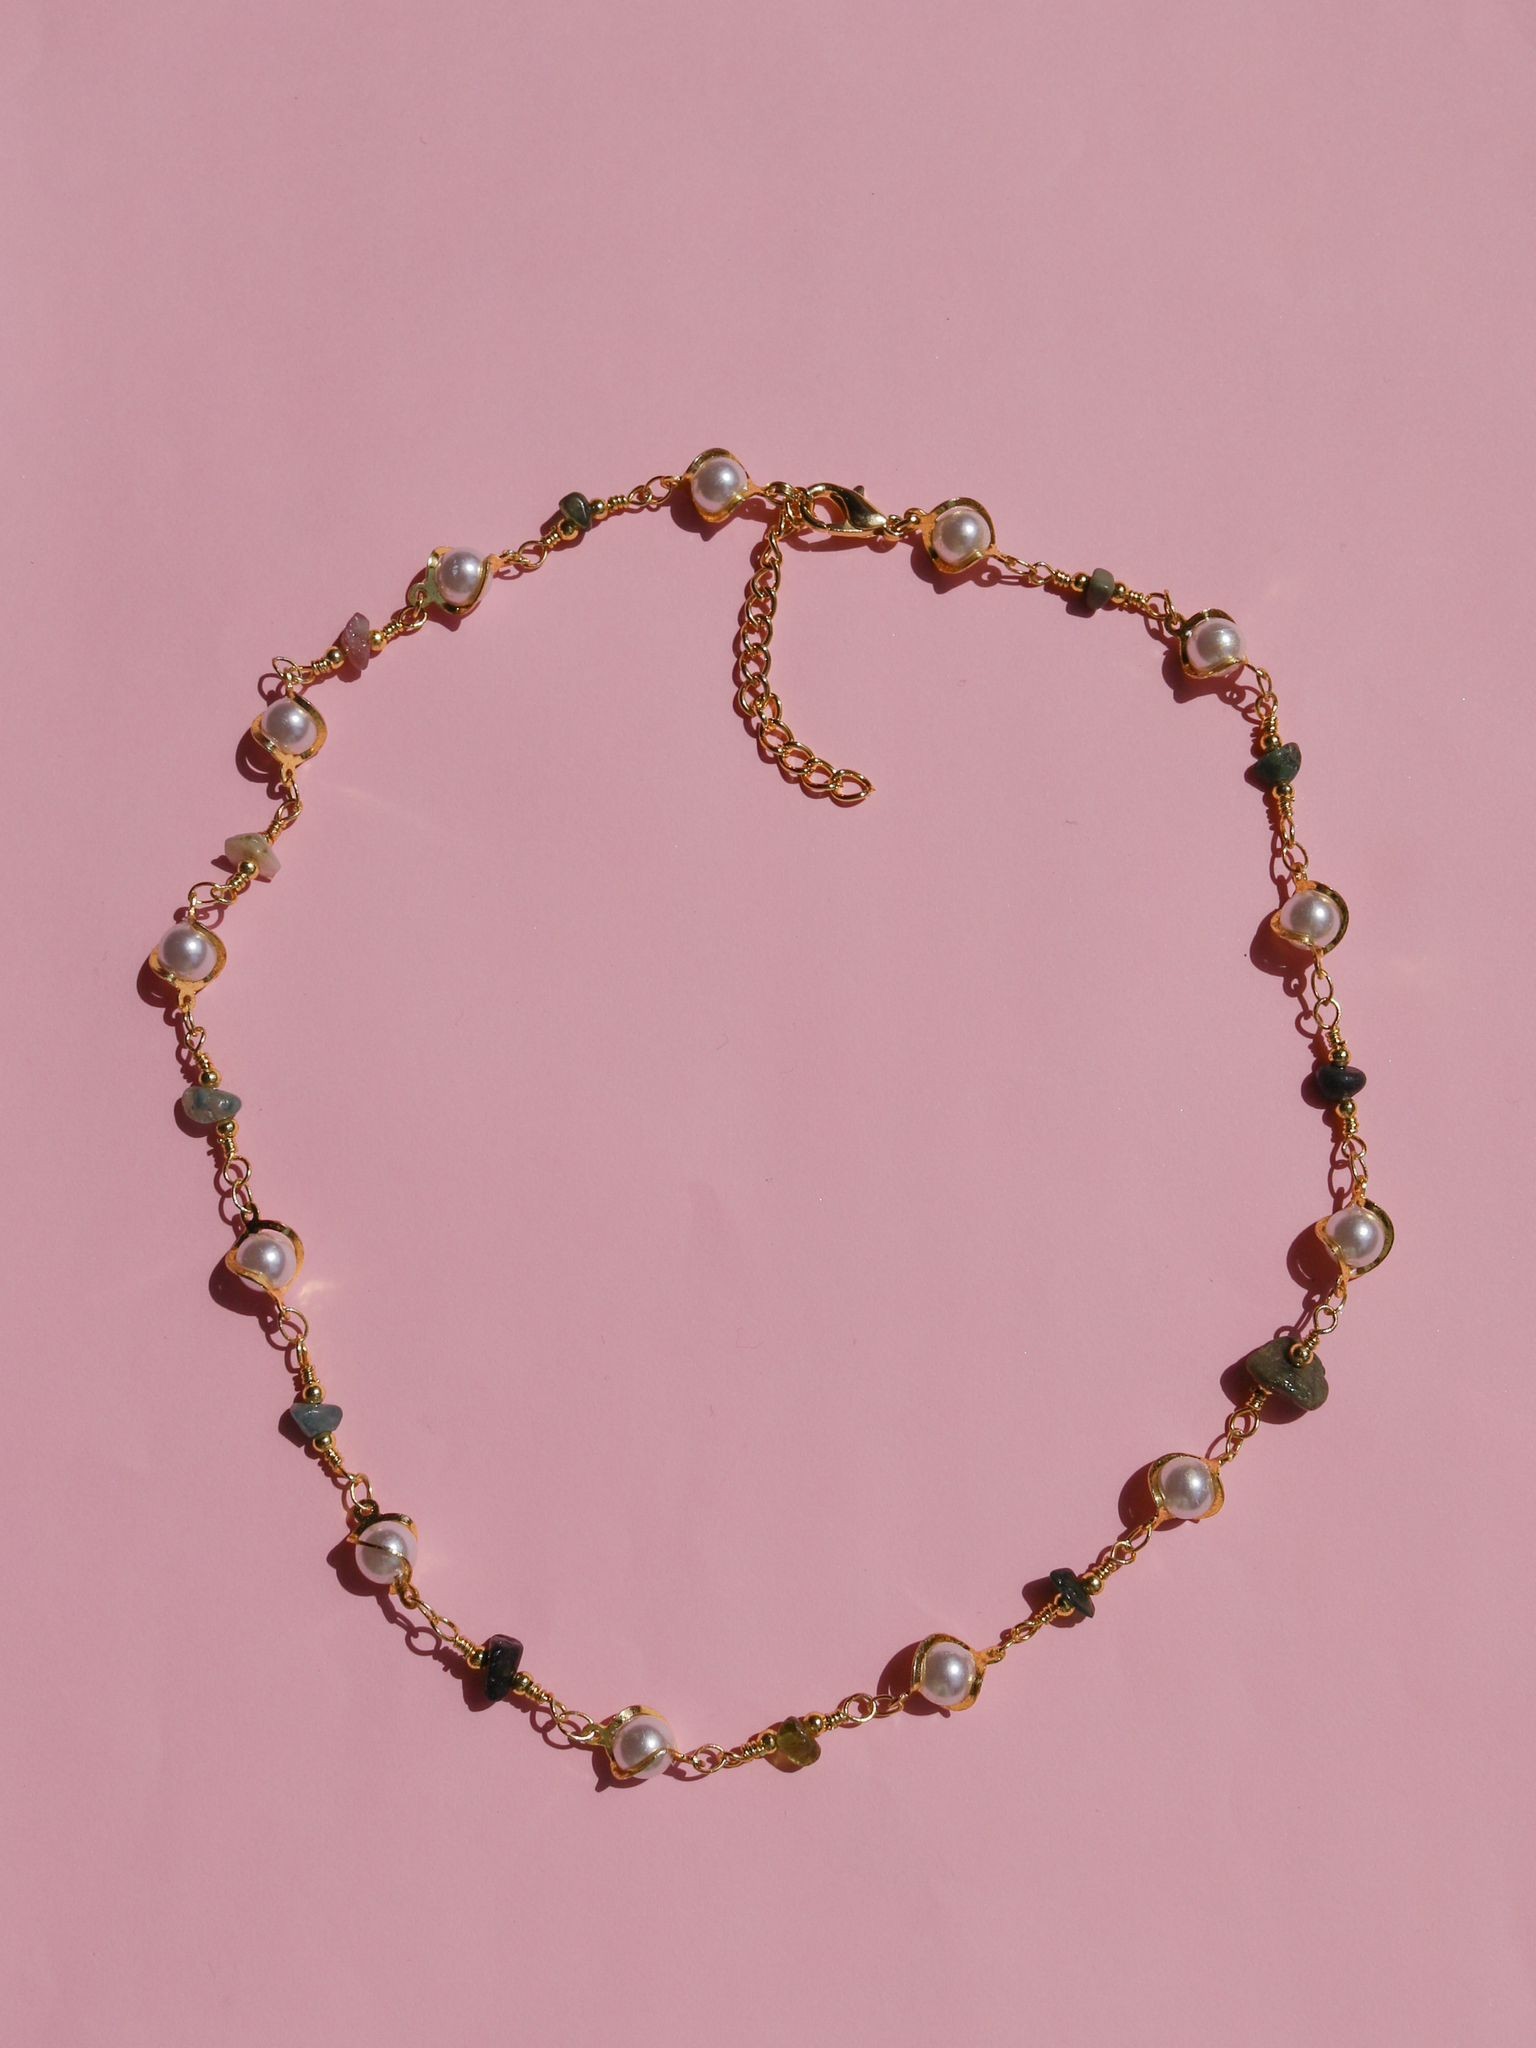 Broken Natural Stone Pearl Necklaces (piece)